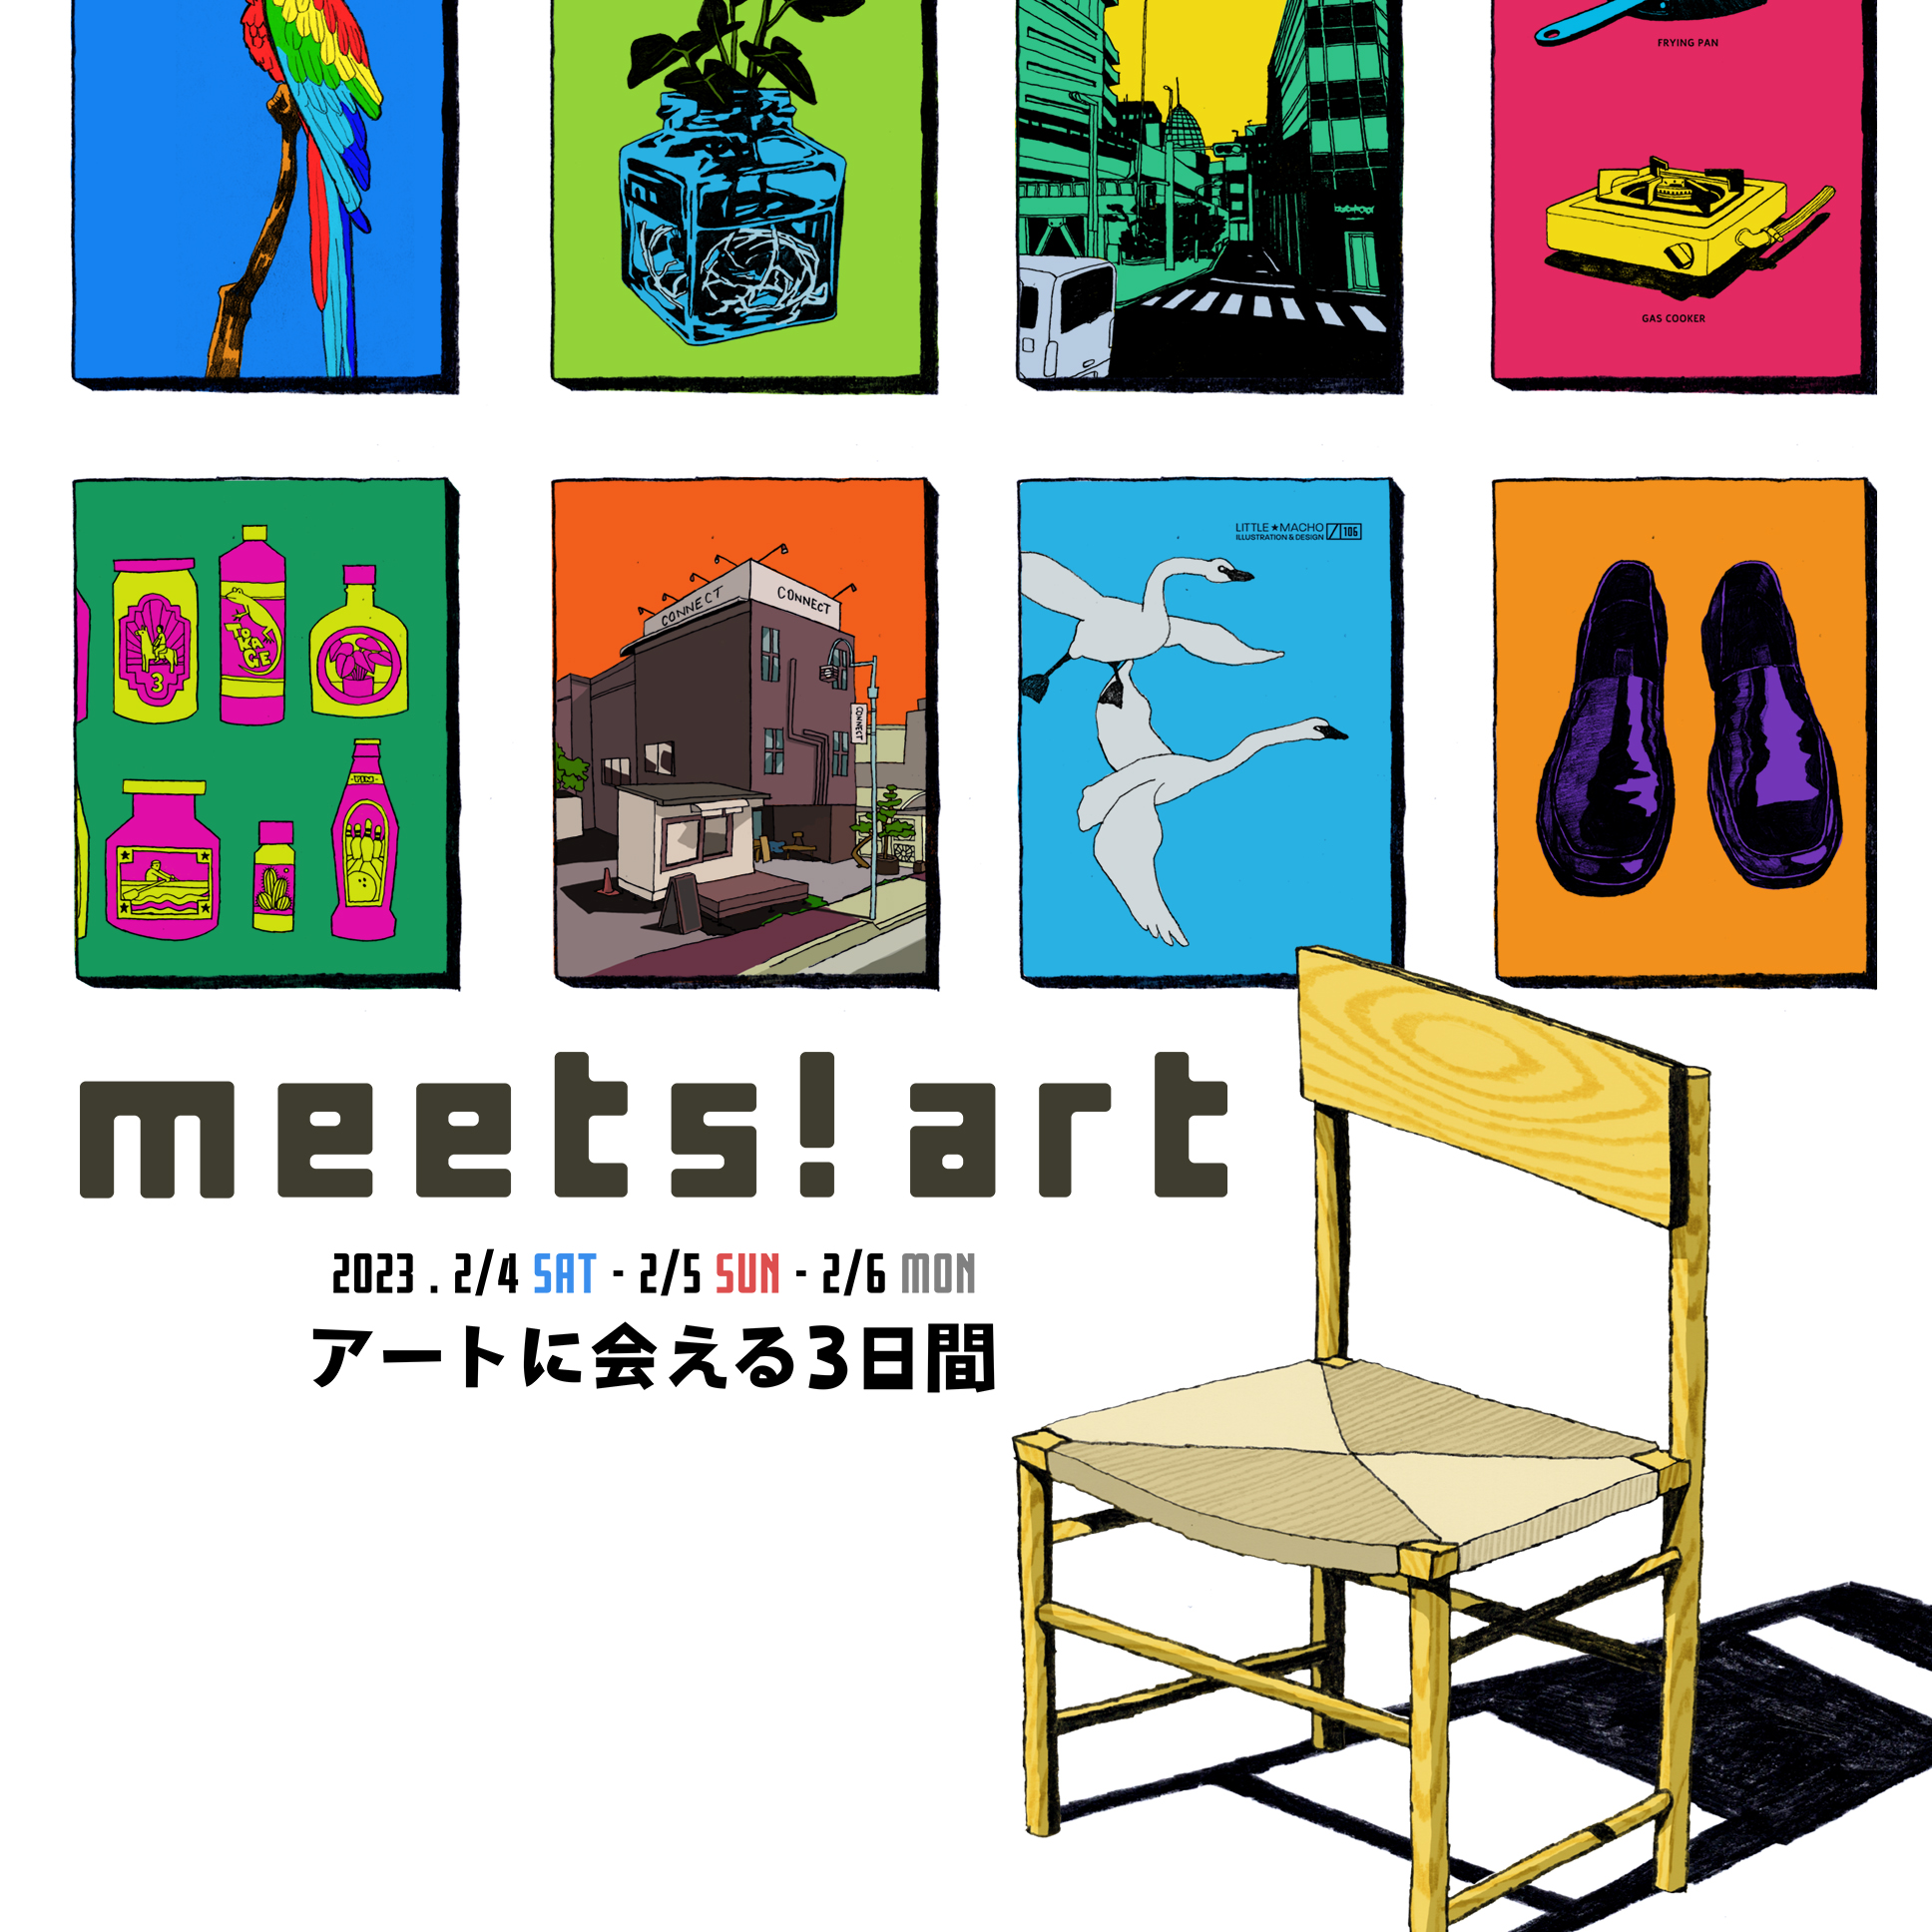 アートフェス「meets!art 2023」開催いたします　 期間：2/4sat～2/6mon